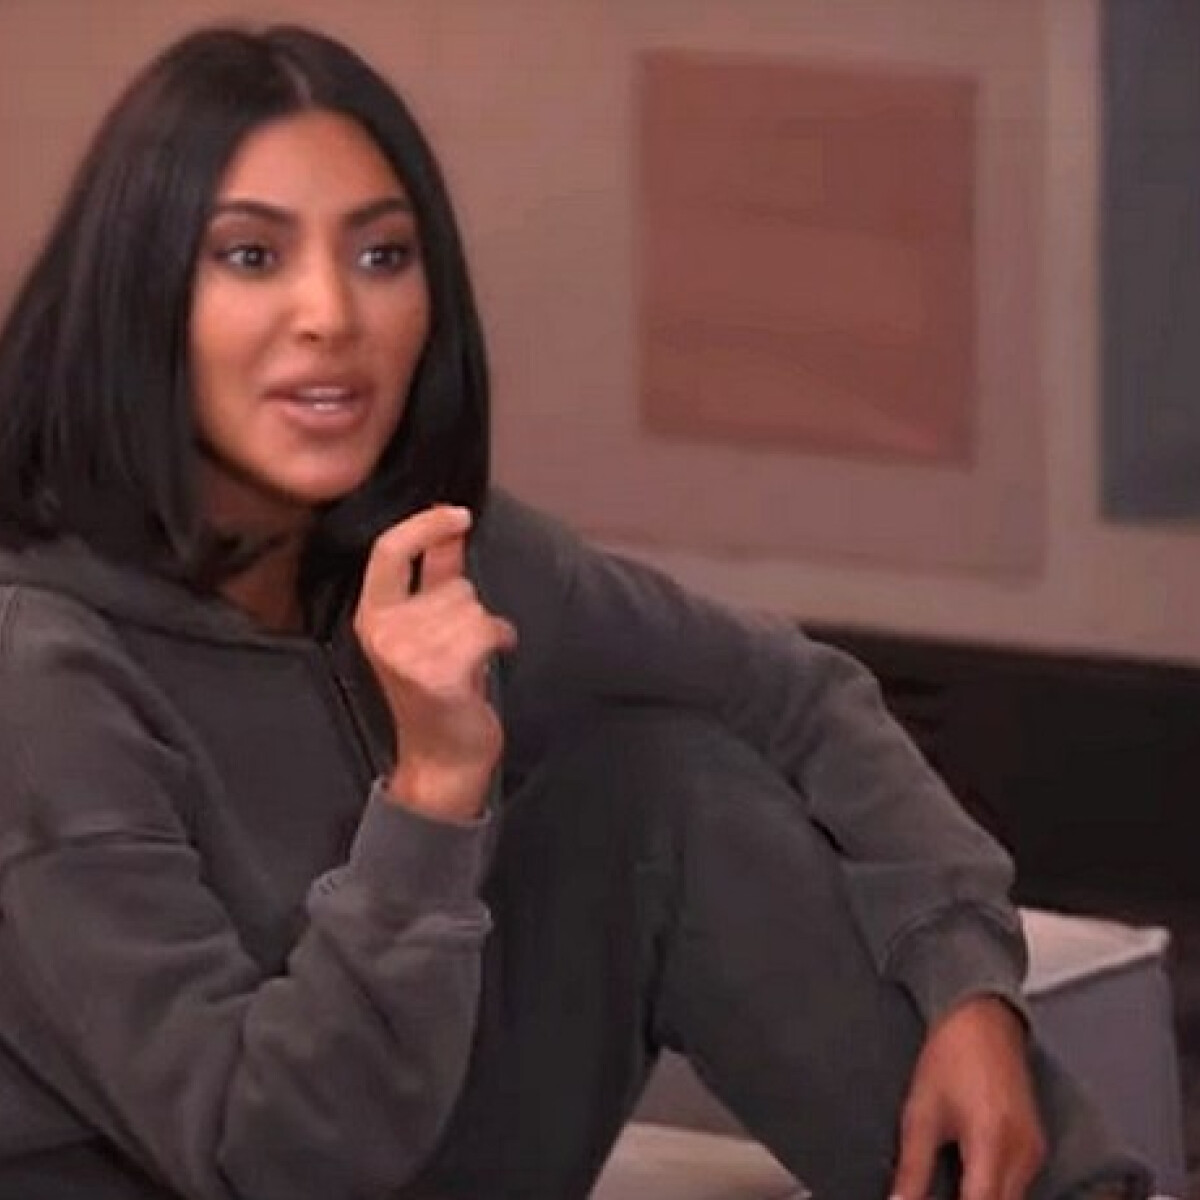 Cukorkákon vitázott össze Kim és Kourtney Kardashian - kinek van igaza?